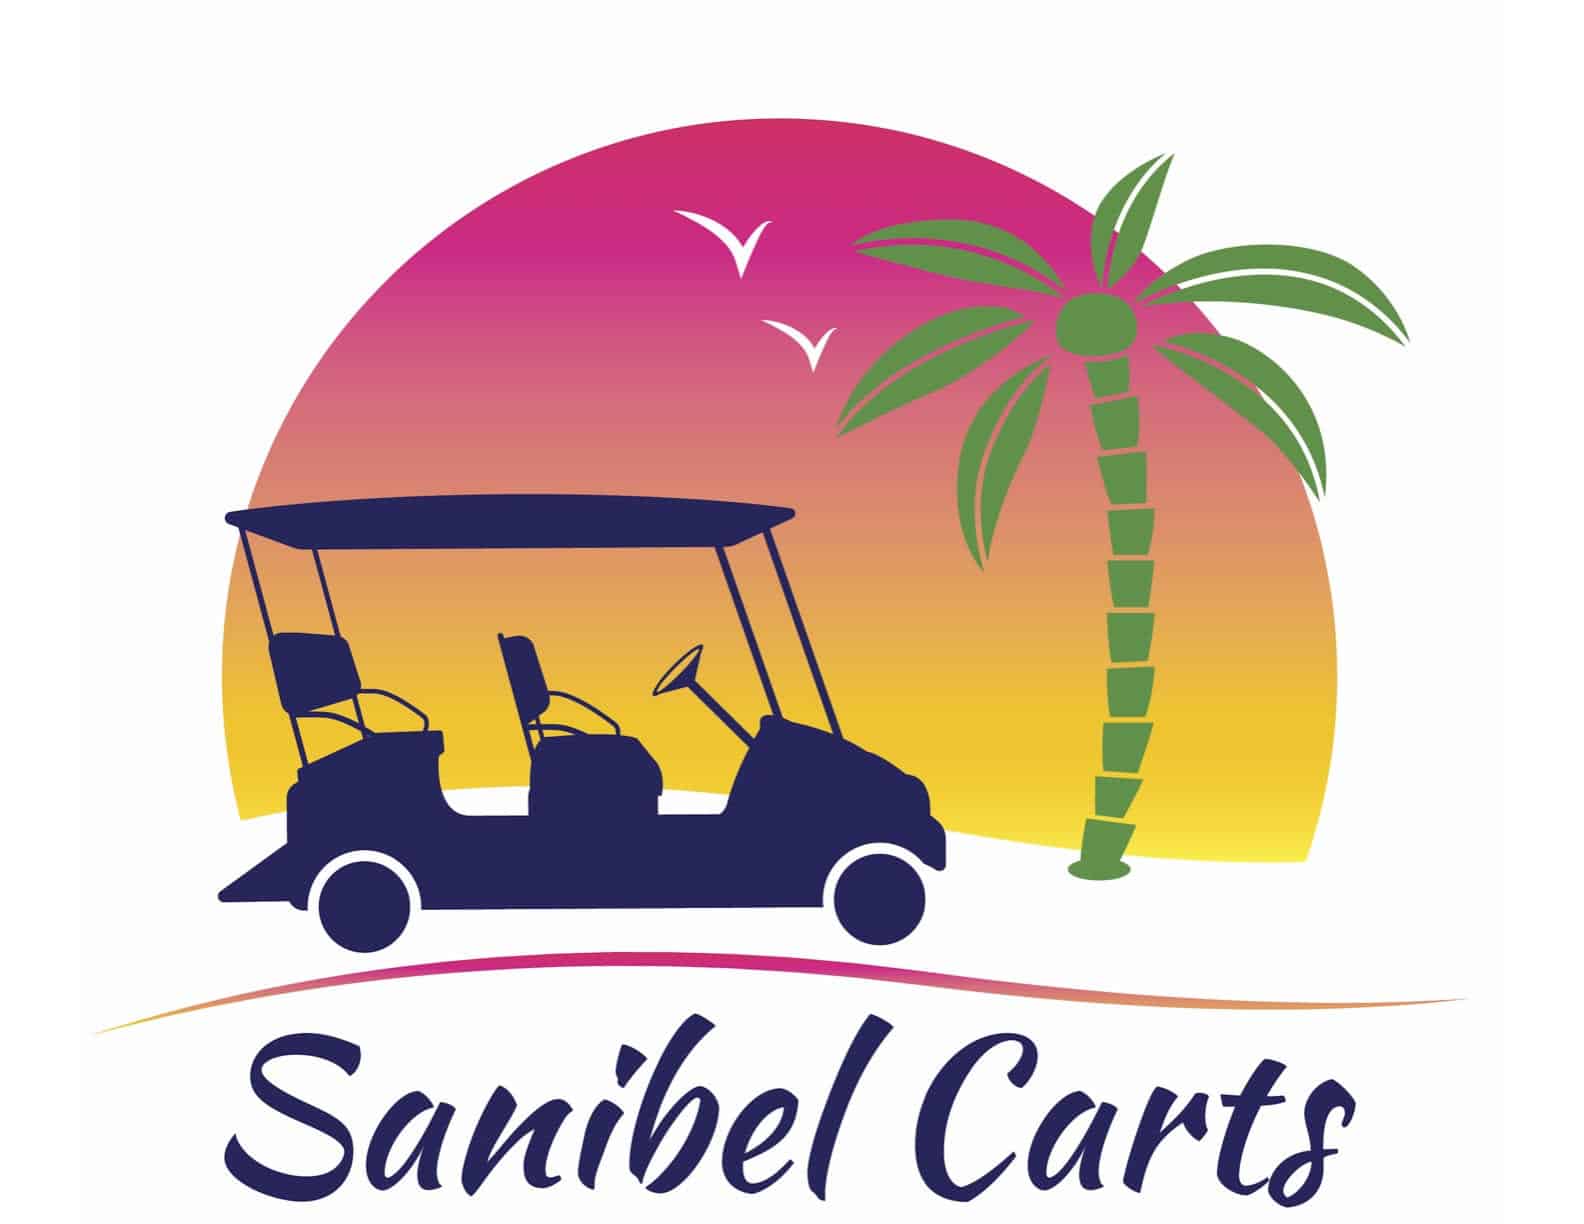 Sanibel Carts